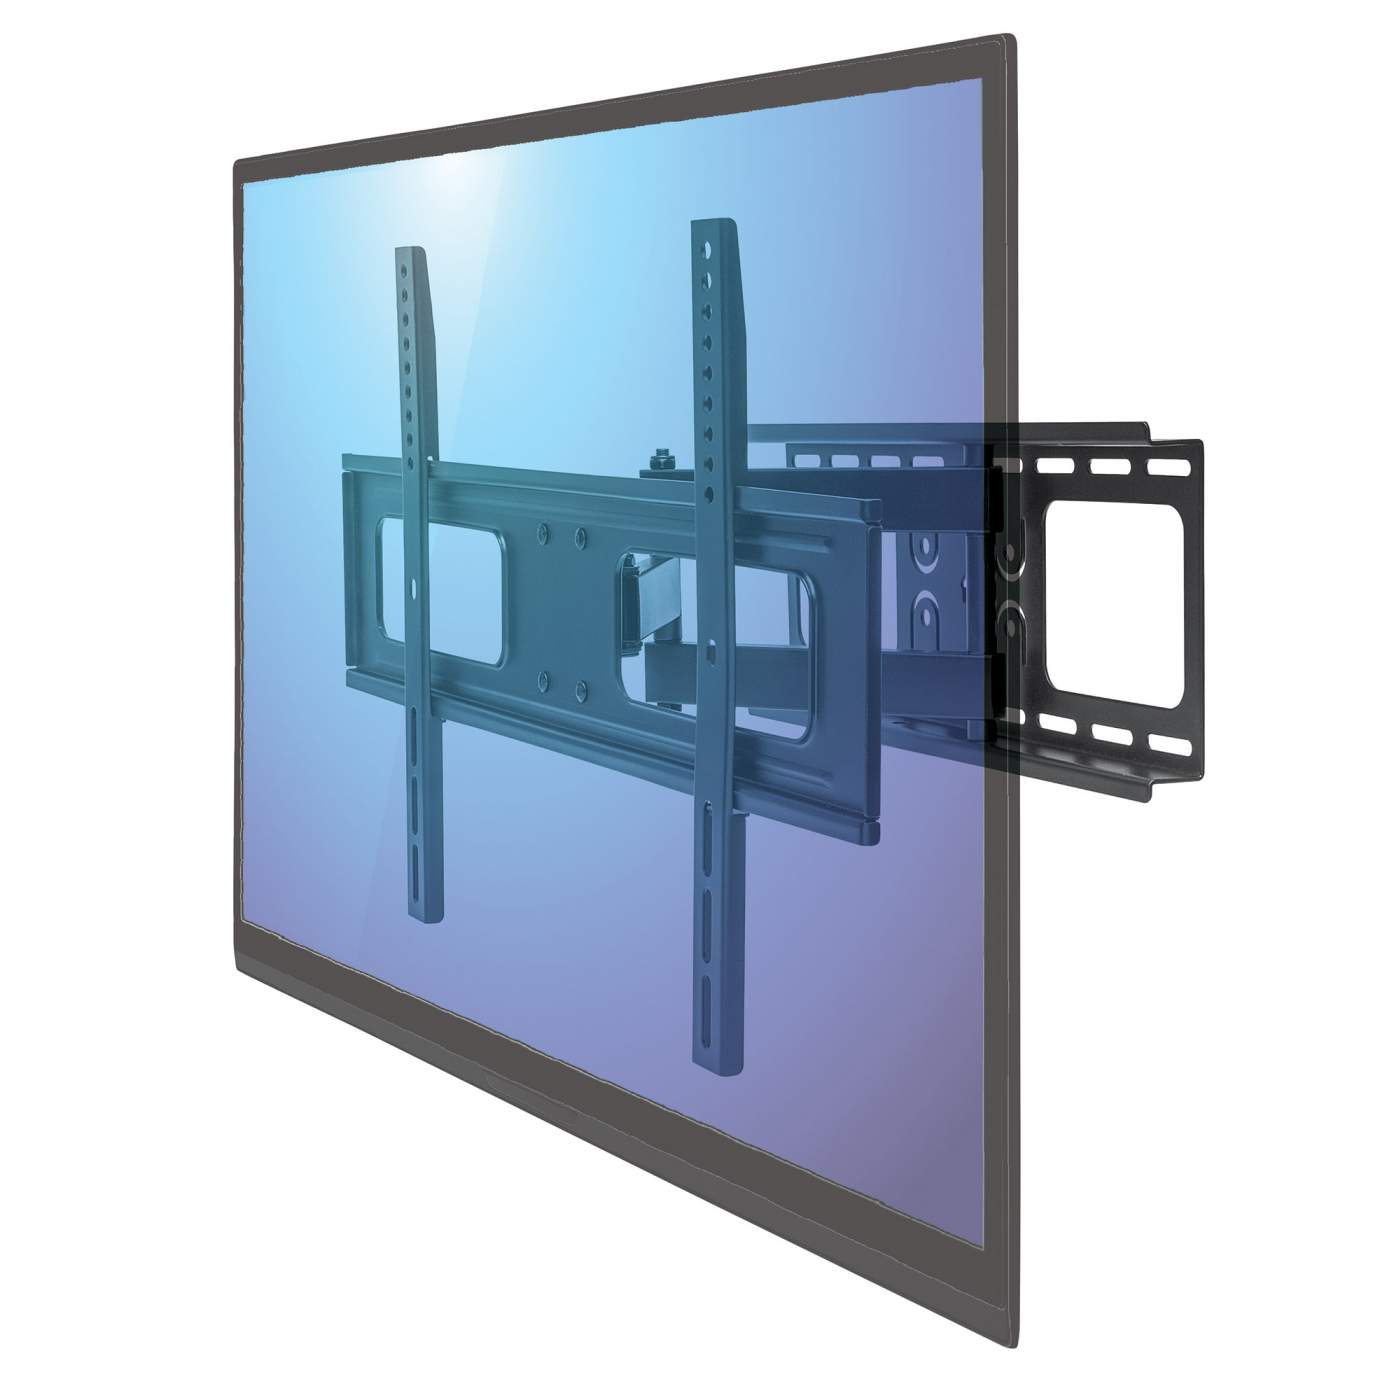  Soporte de pared para TV para pantallas de 14 a 43 pulgadas,  soporte de TV plano sólido y resistente, capacidad de peso de 77.2 lbs,  VESA universal de 7.874 x 7.874